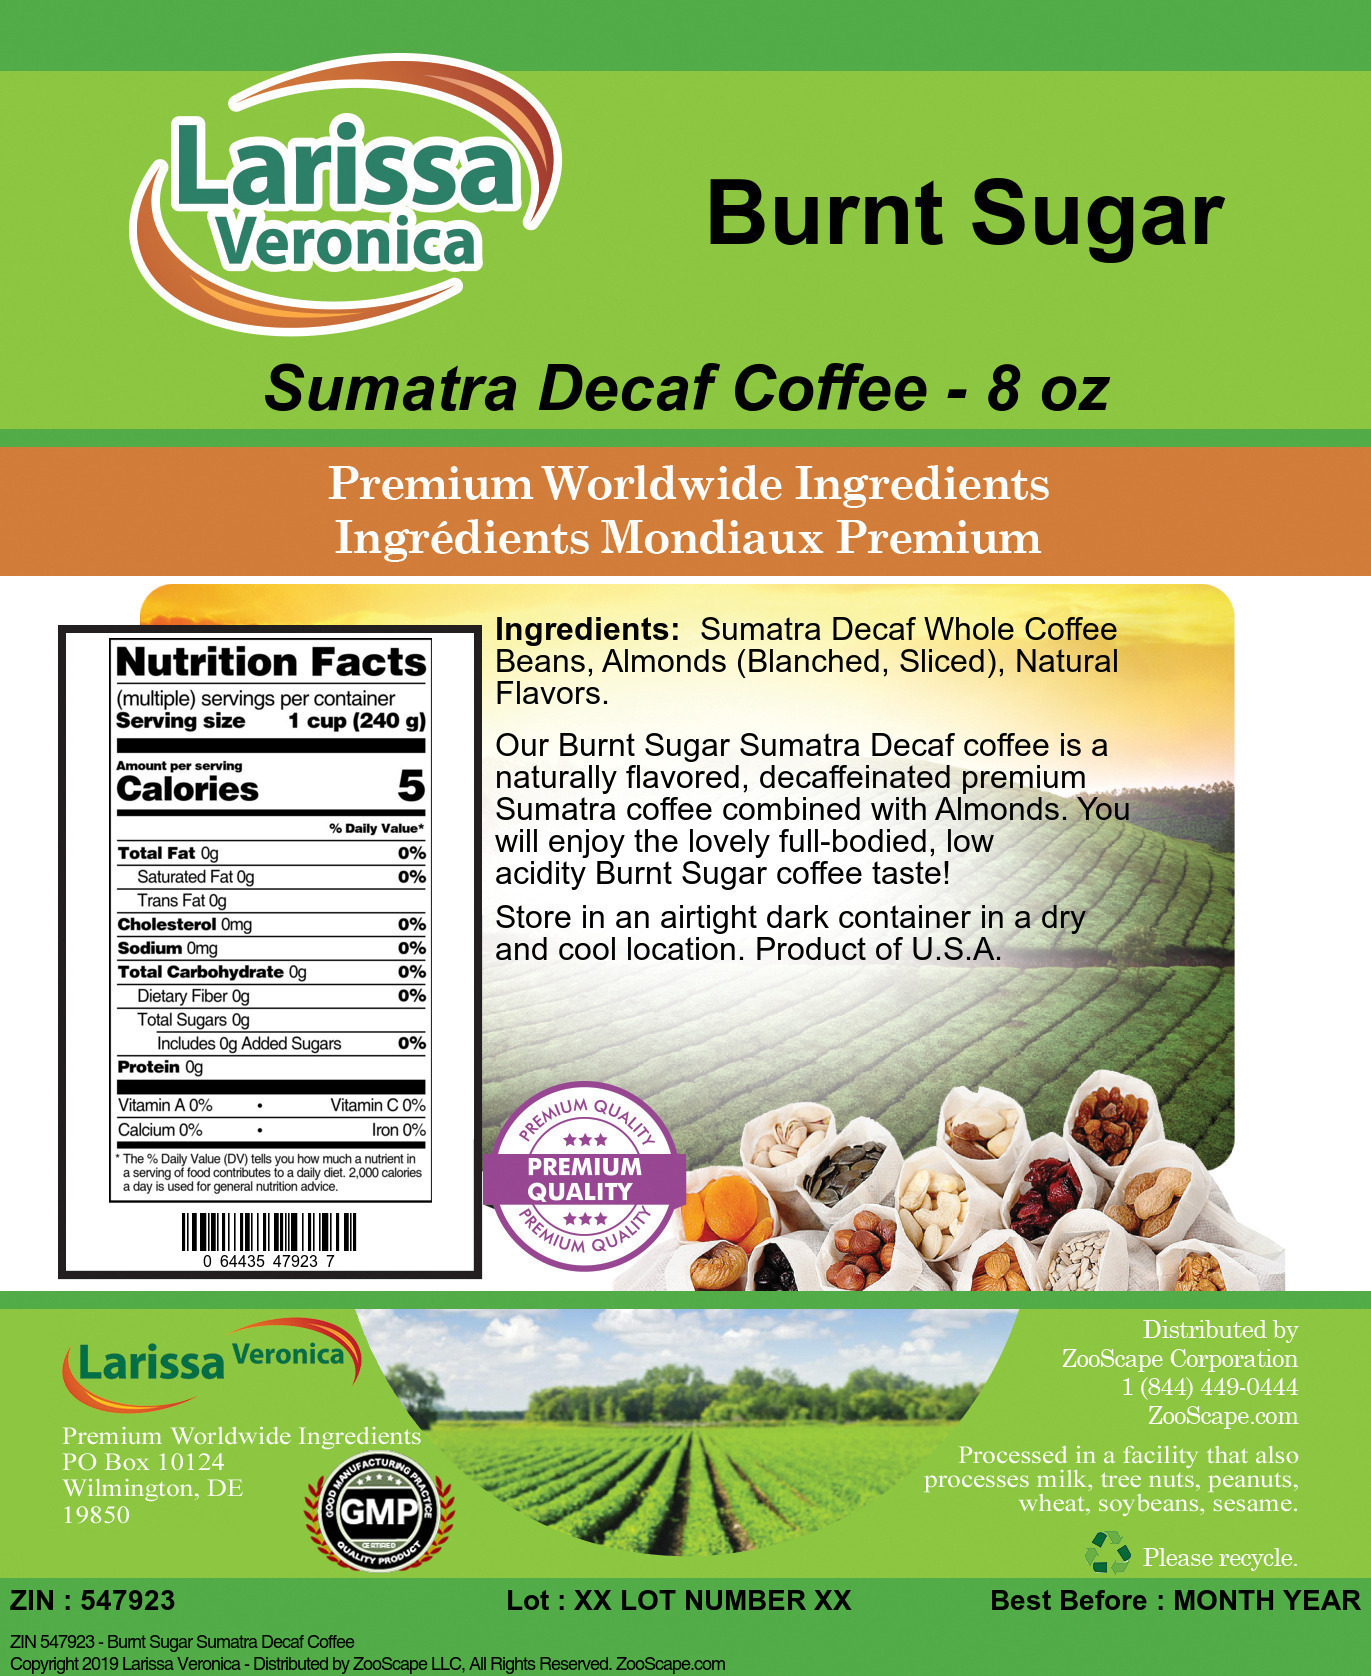 Burnt Sugar Sumatra Decaf Coffee - Label